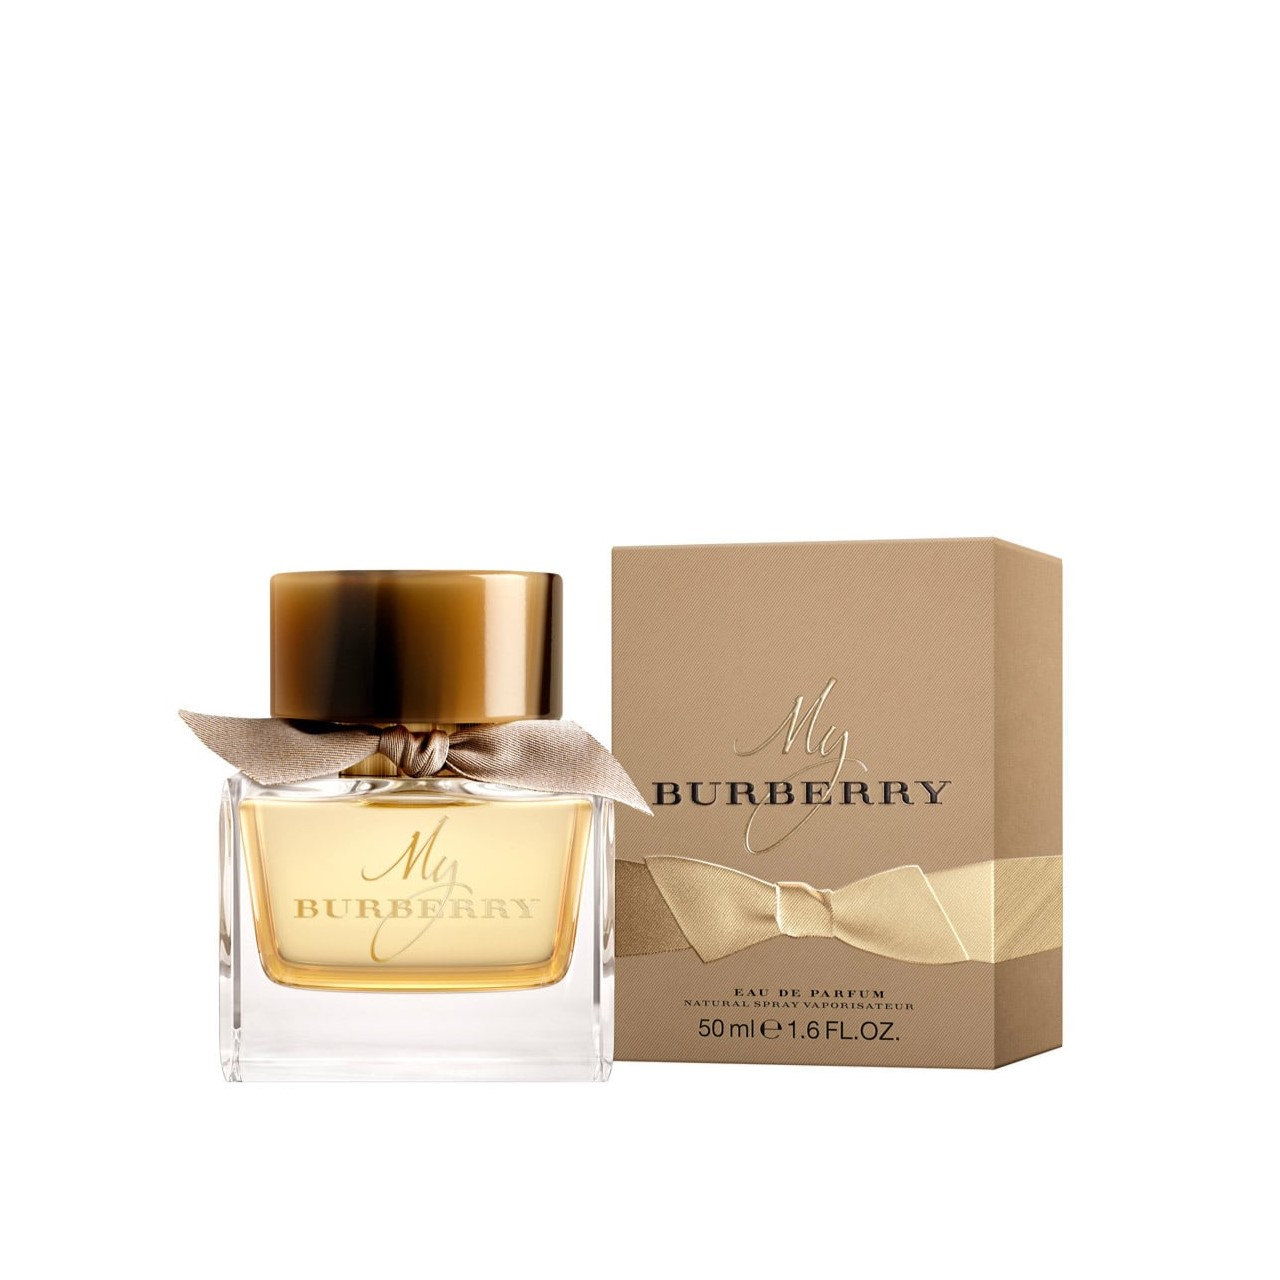 Buy Burberry My Burberry Eau de Parfum 50ml · Macau